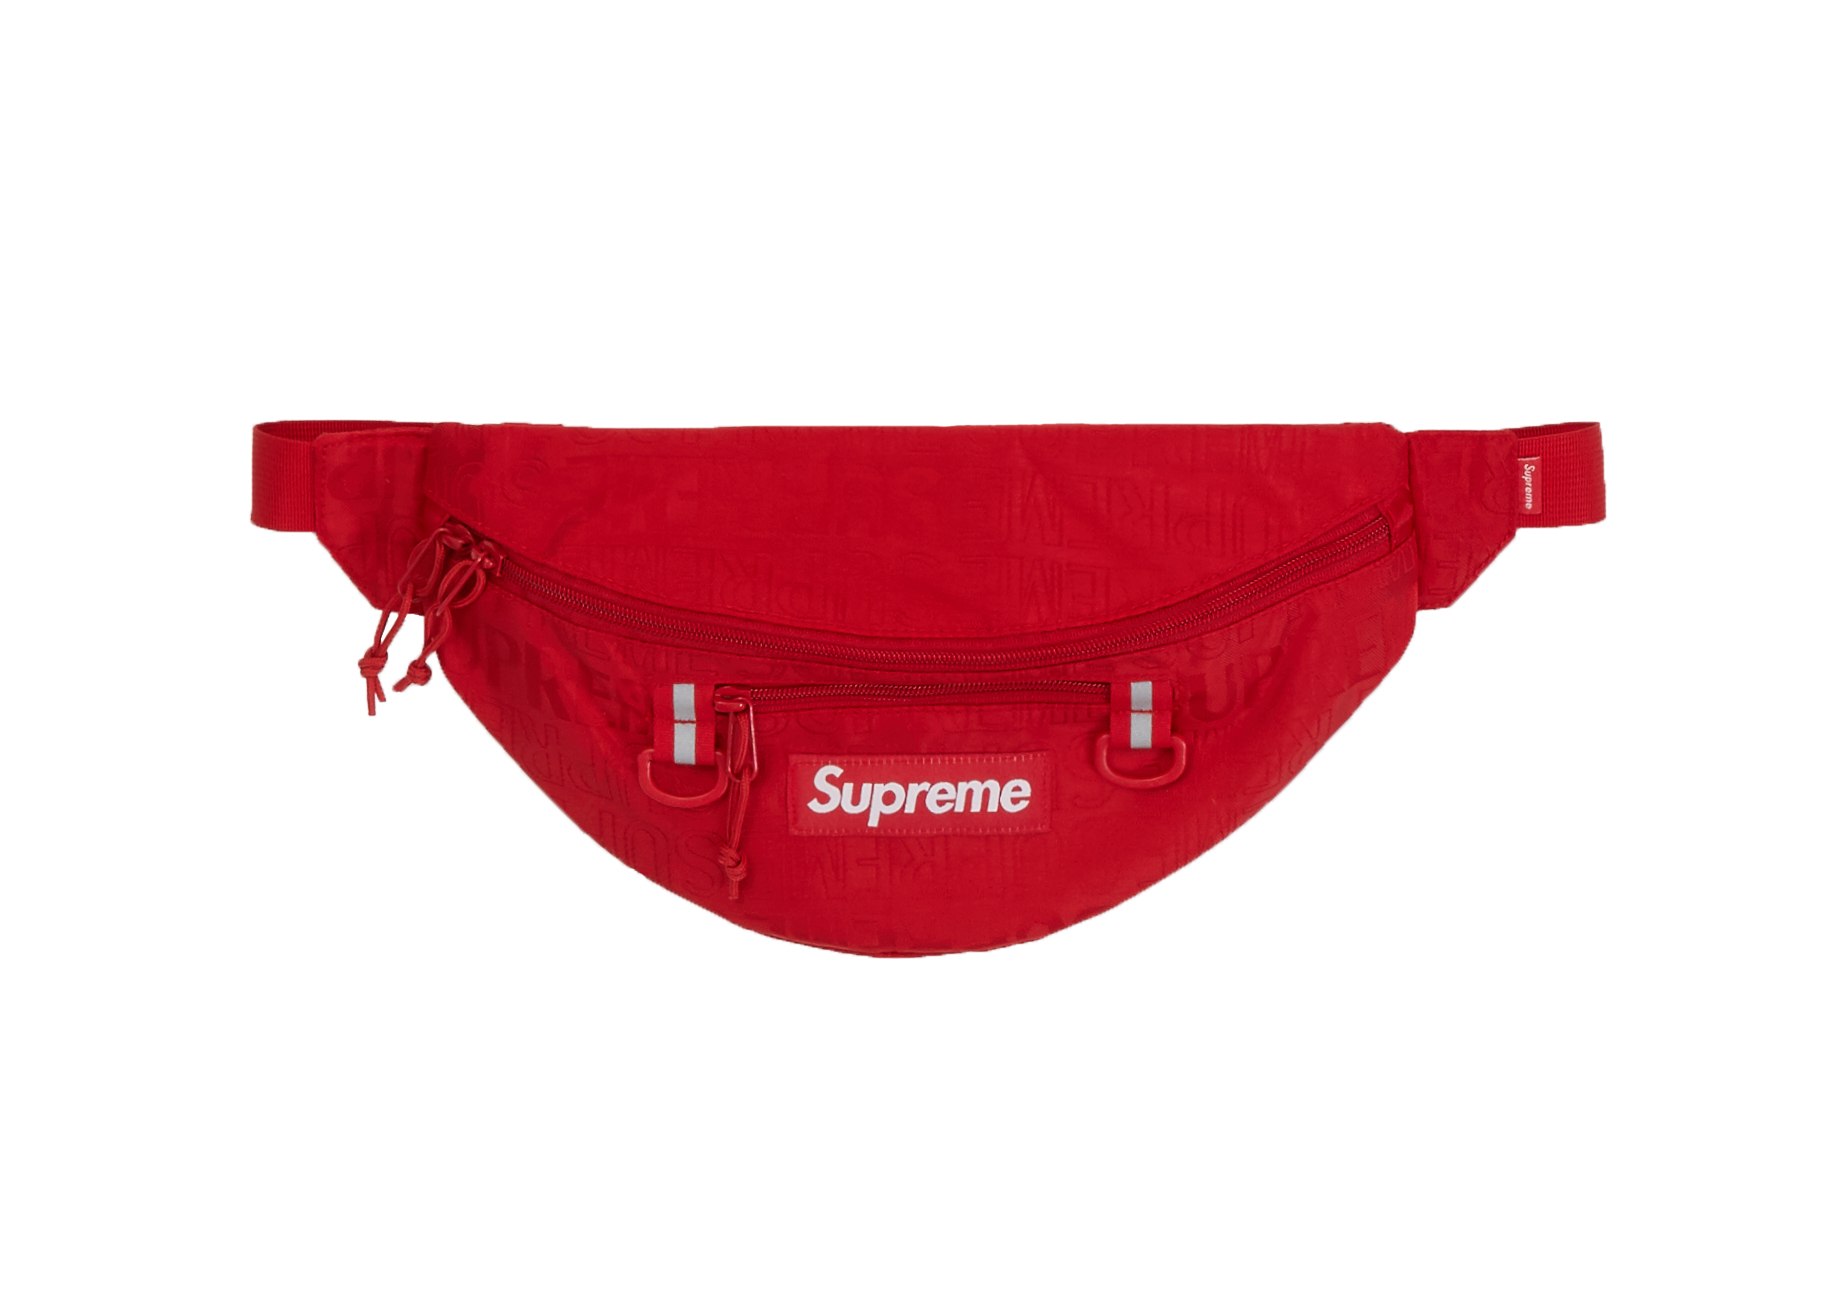 Red Supreme Waist Bag Hot Sale, 58% OFF | www.cernebrasil.com